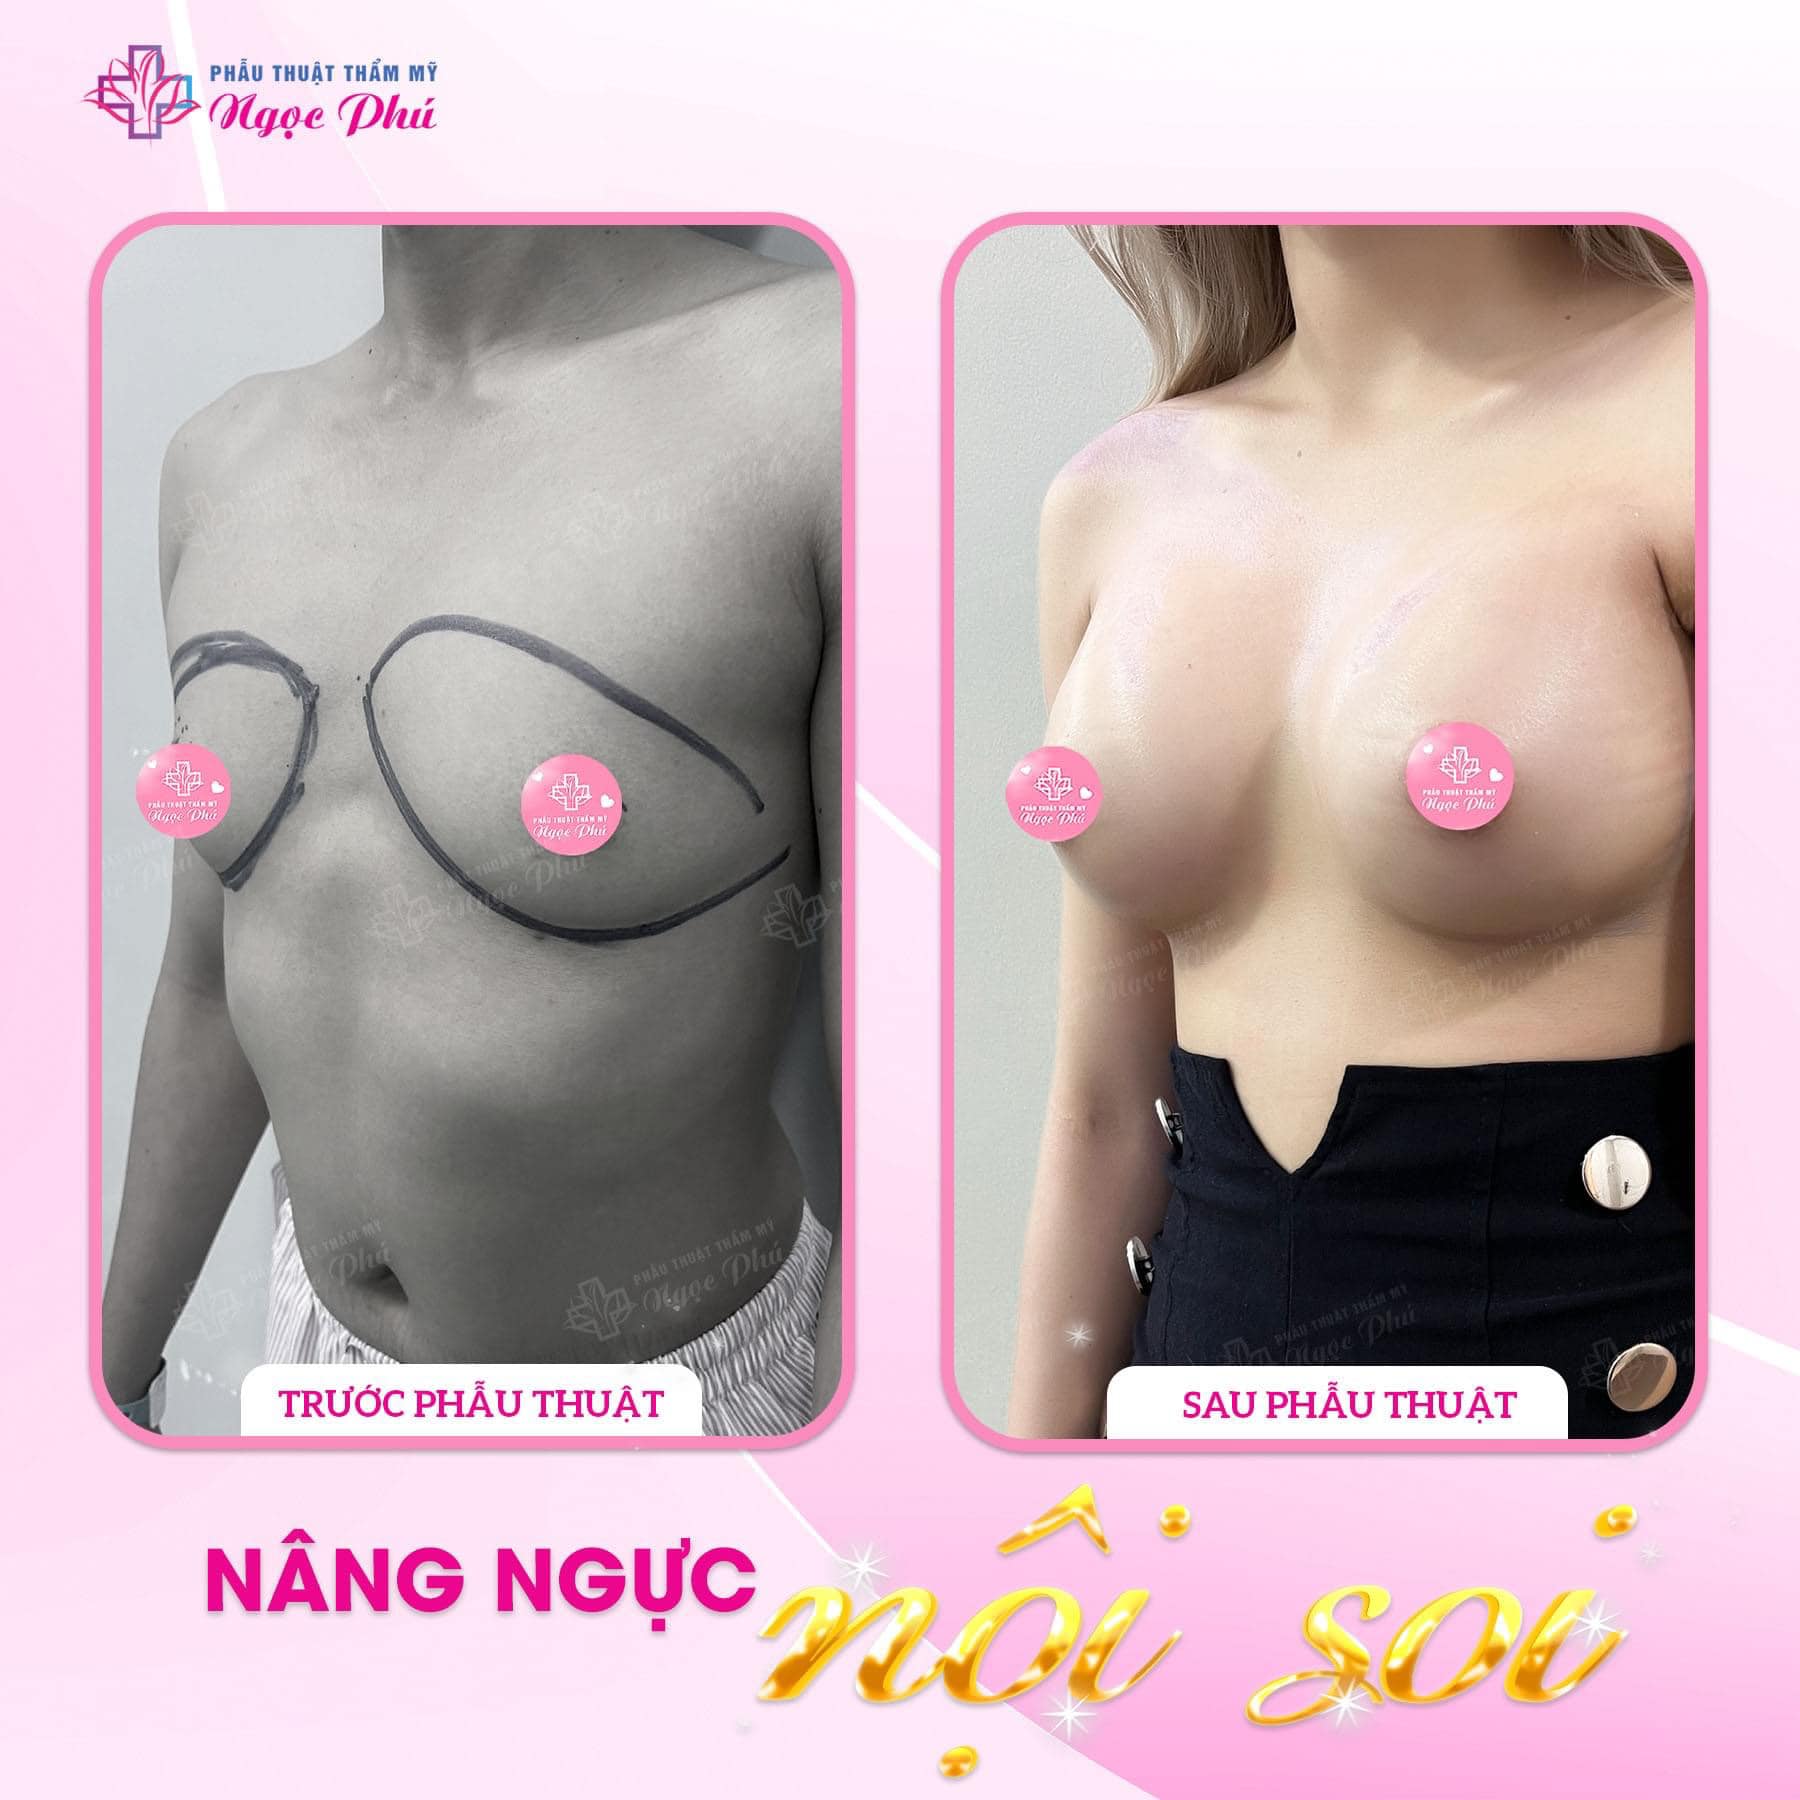 Trong thời gian hồi phục sau phẫu thuật nâng ngực, bạn cần lưu ý theo dõi các dấu hiệu bất thường để kịp thời phát hiện và xử lý các biến chứng